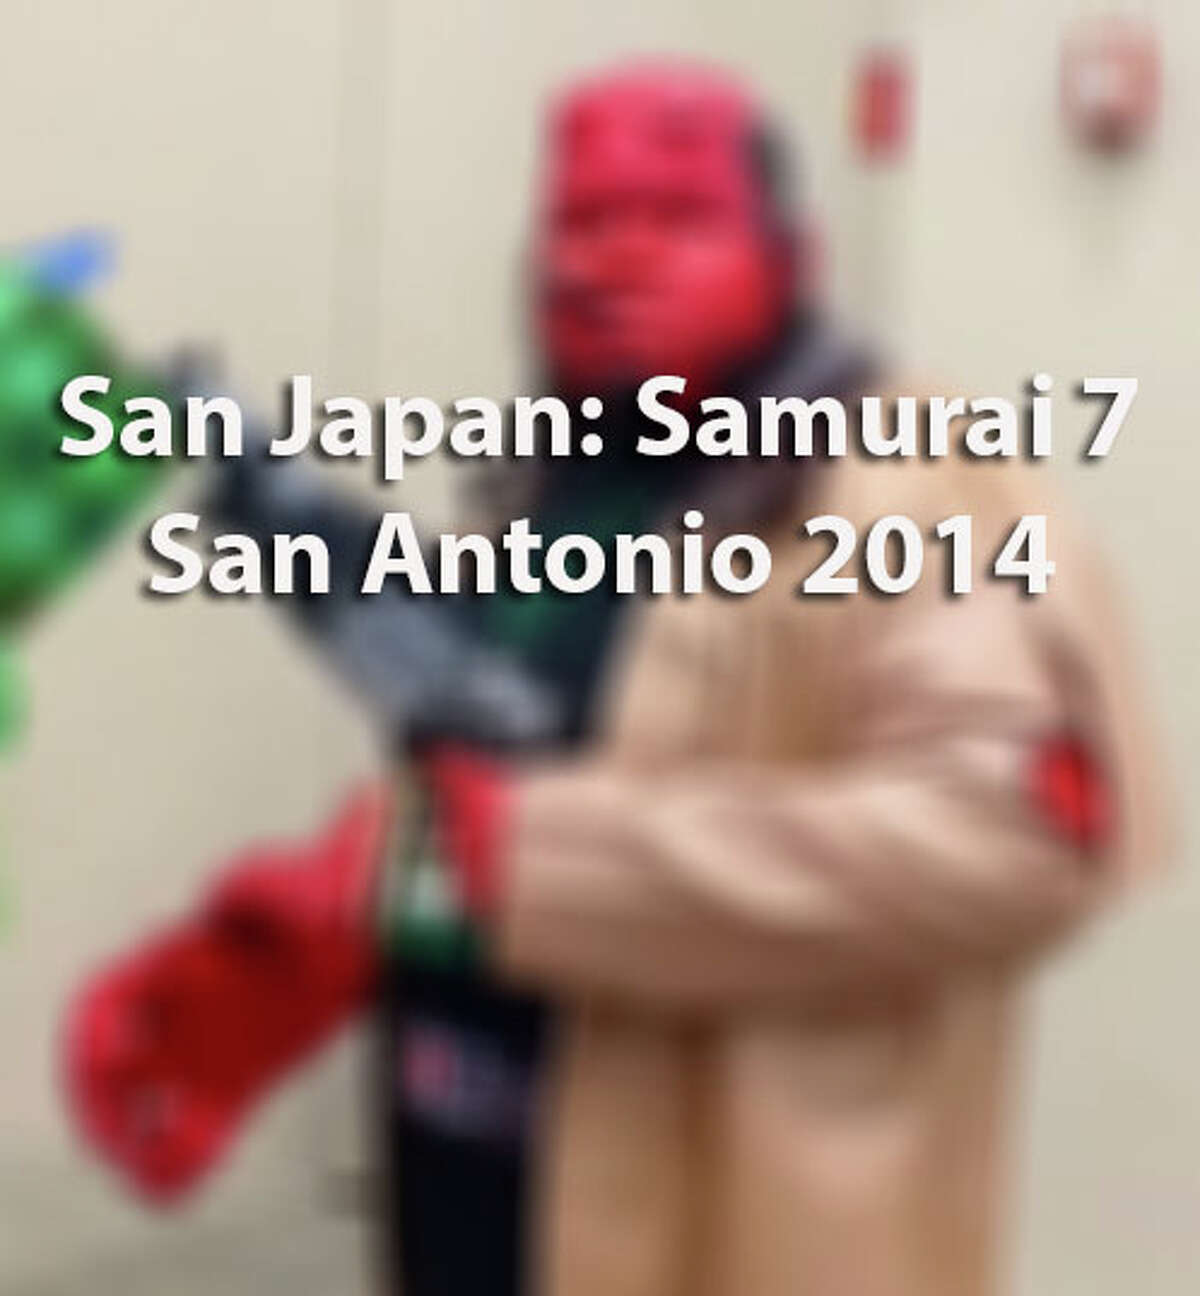 San Japan: Samurai 7 San Antonio 2014